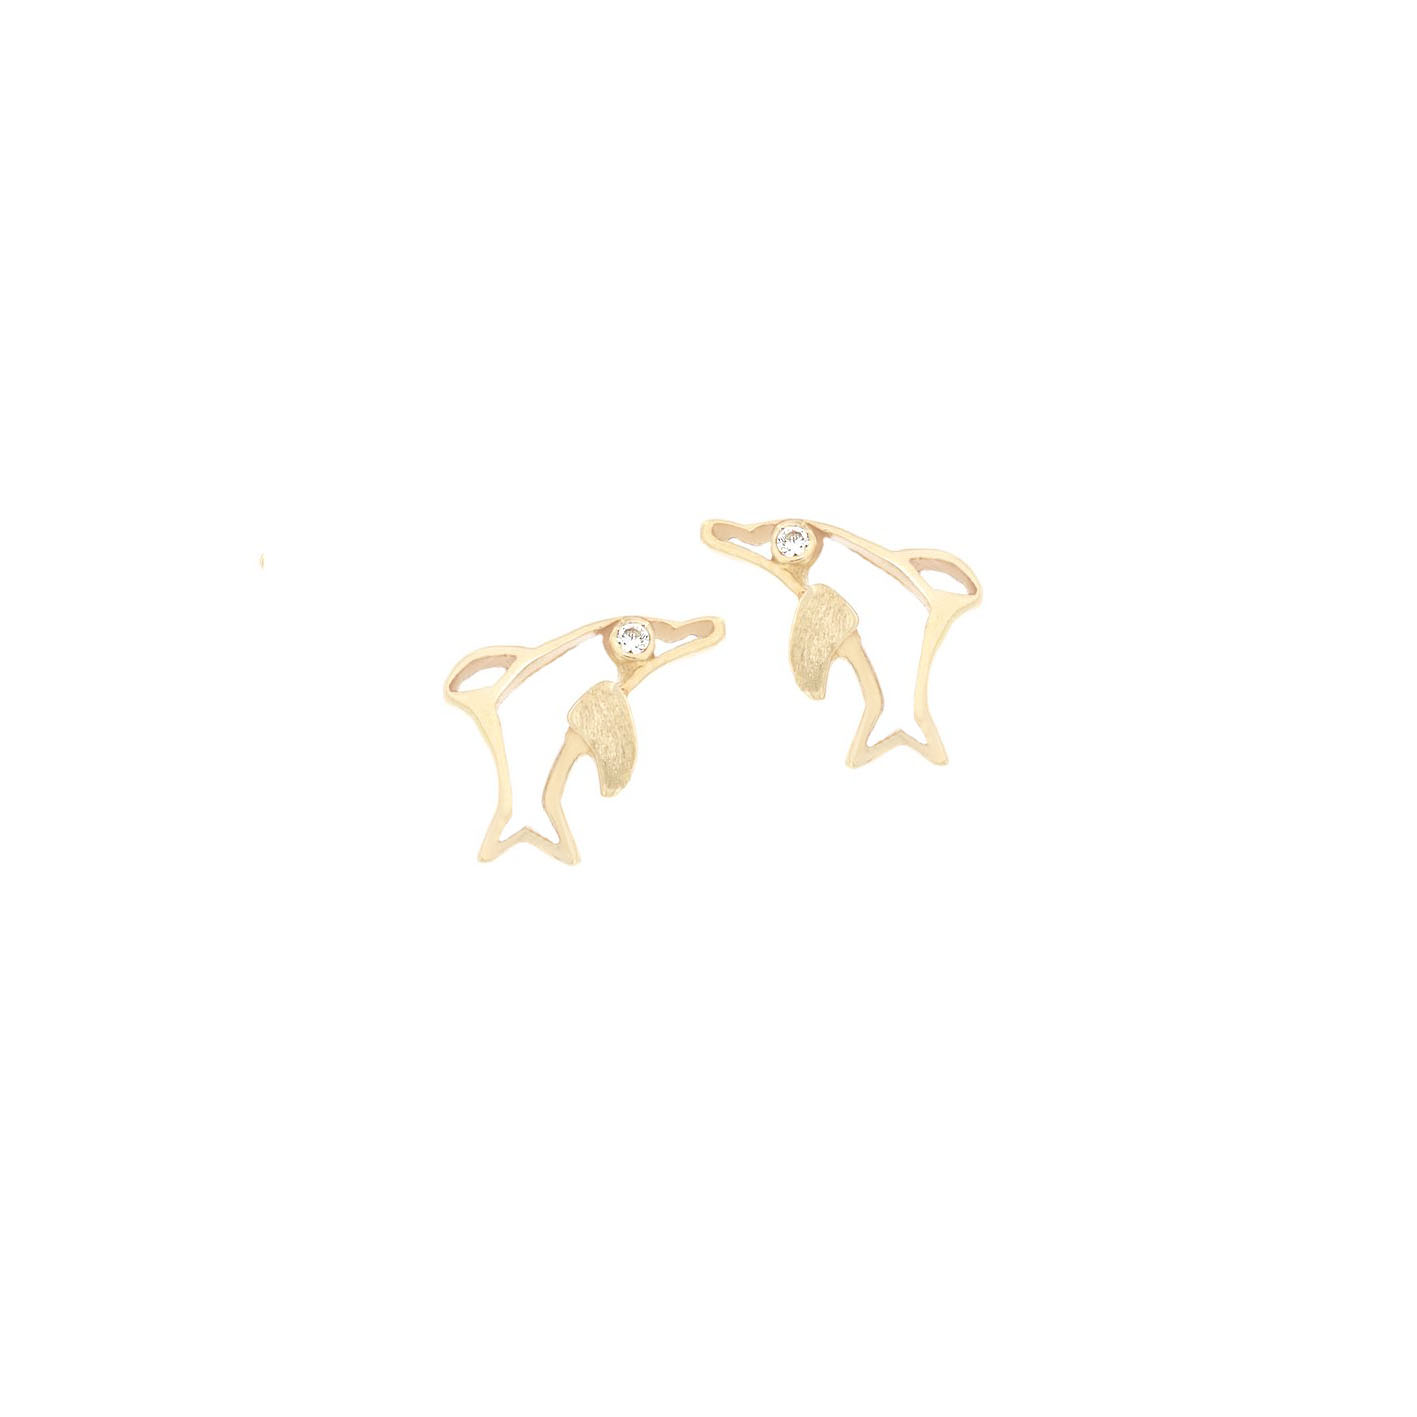 Aretes de Oro 14k modelo delfin con circonias